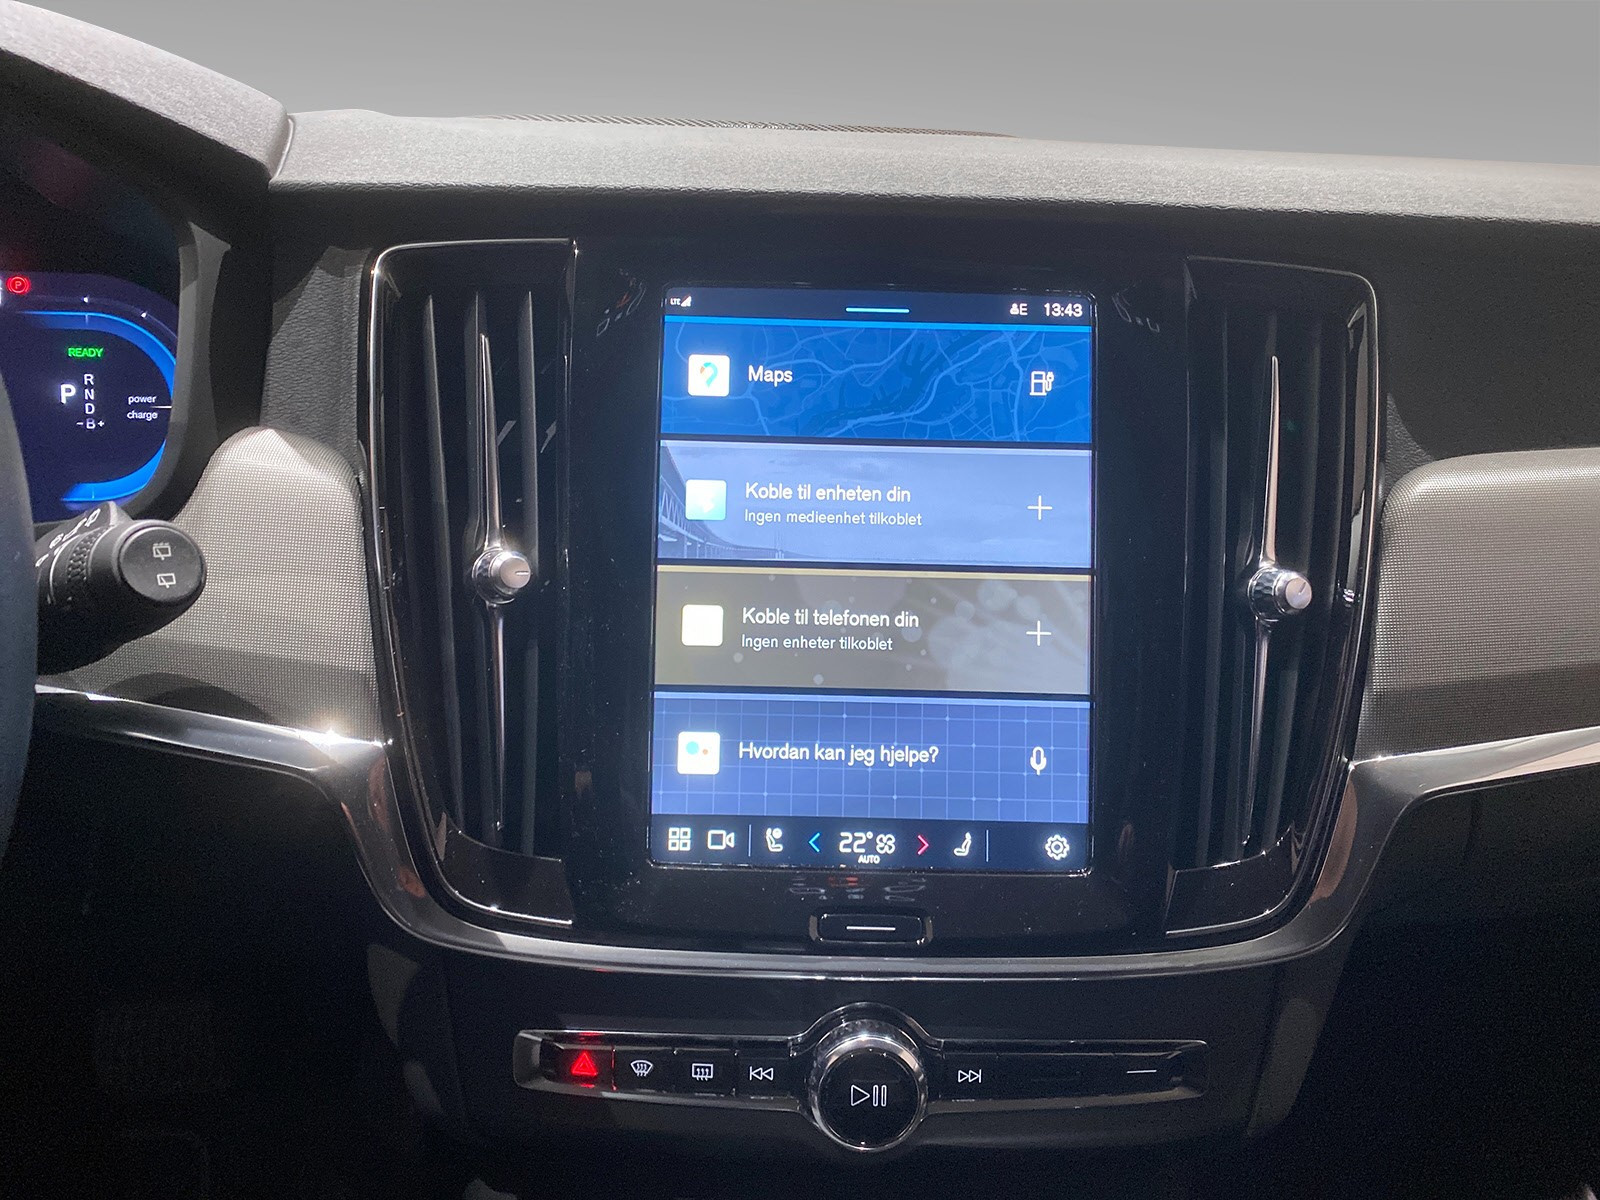 Stor oversiktlig touchskjerm - her kan du enkelt betjene alt fra radio til bilens kjøreegenskaper.